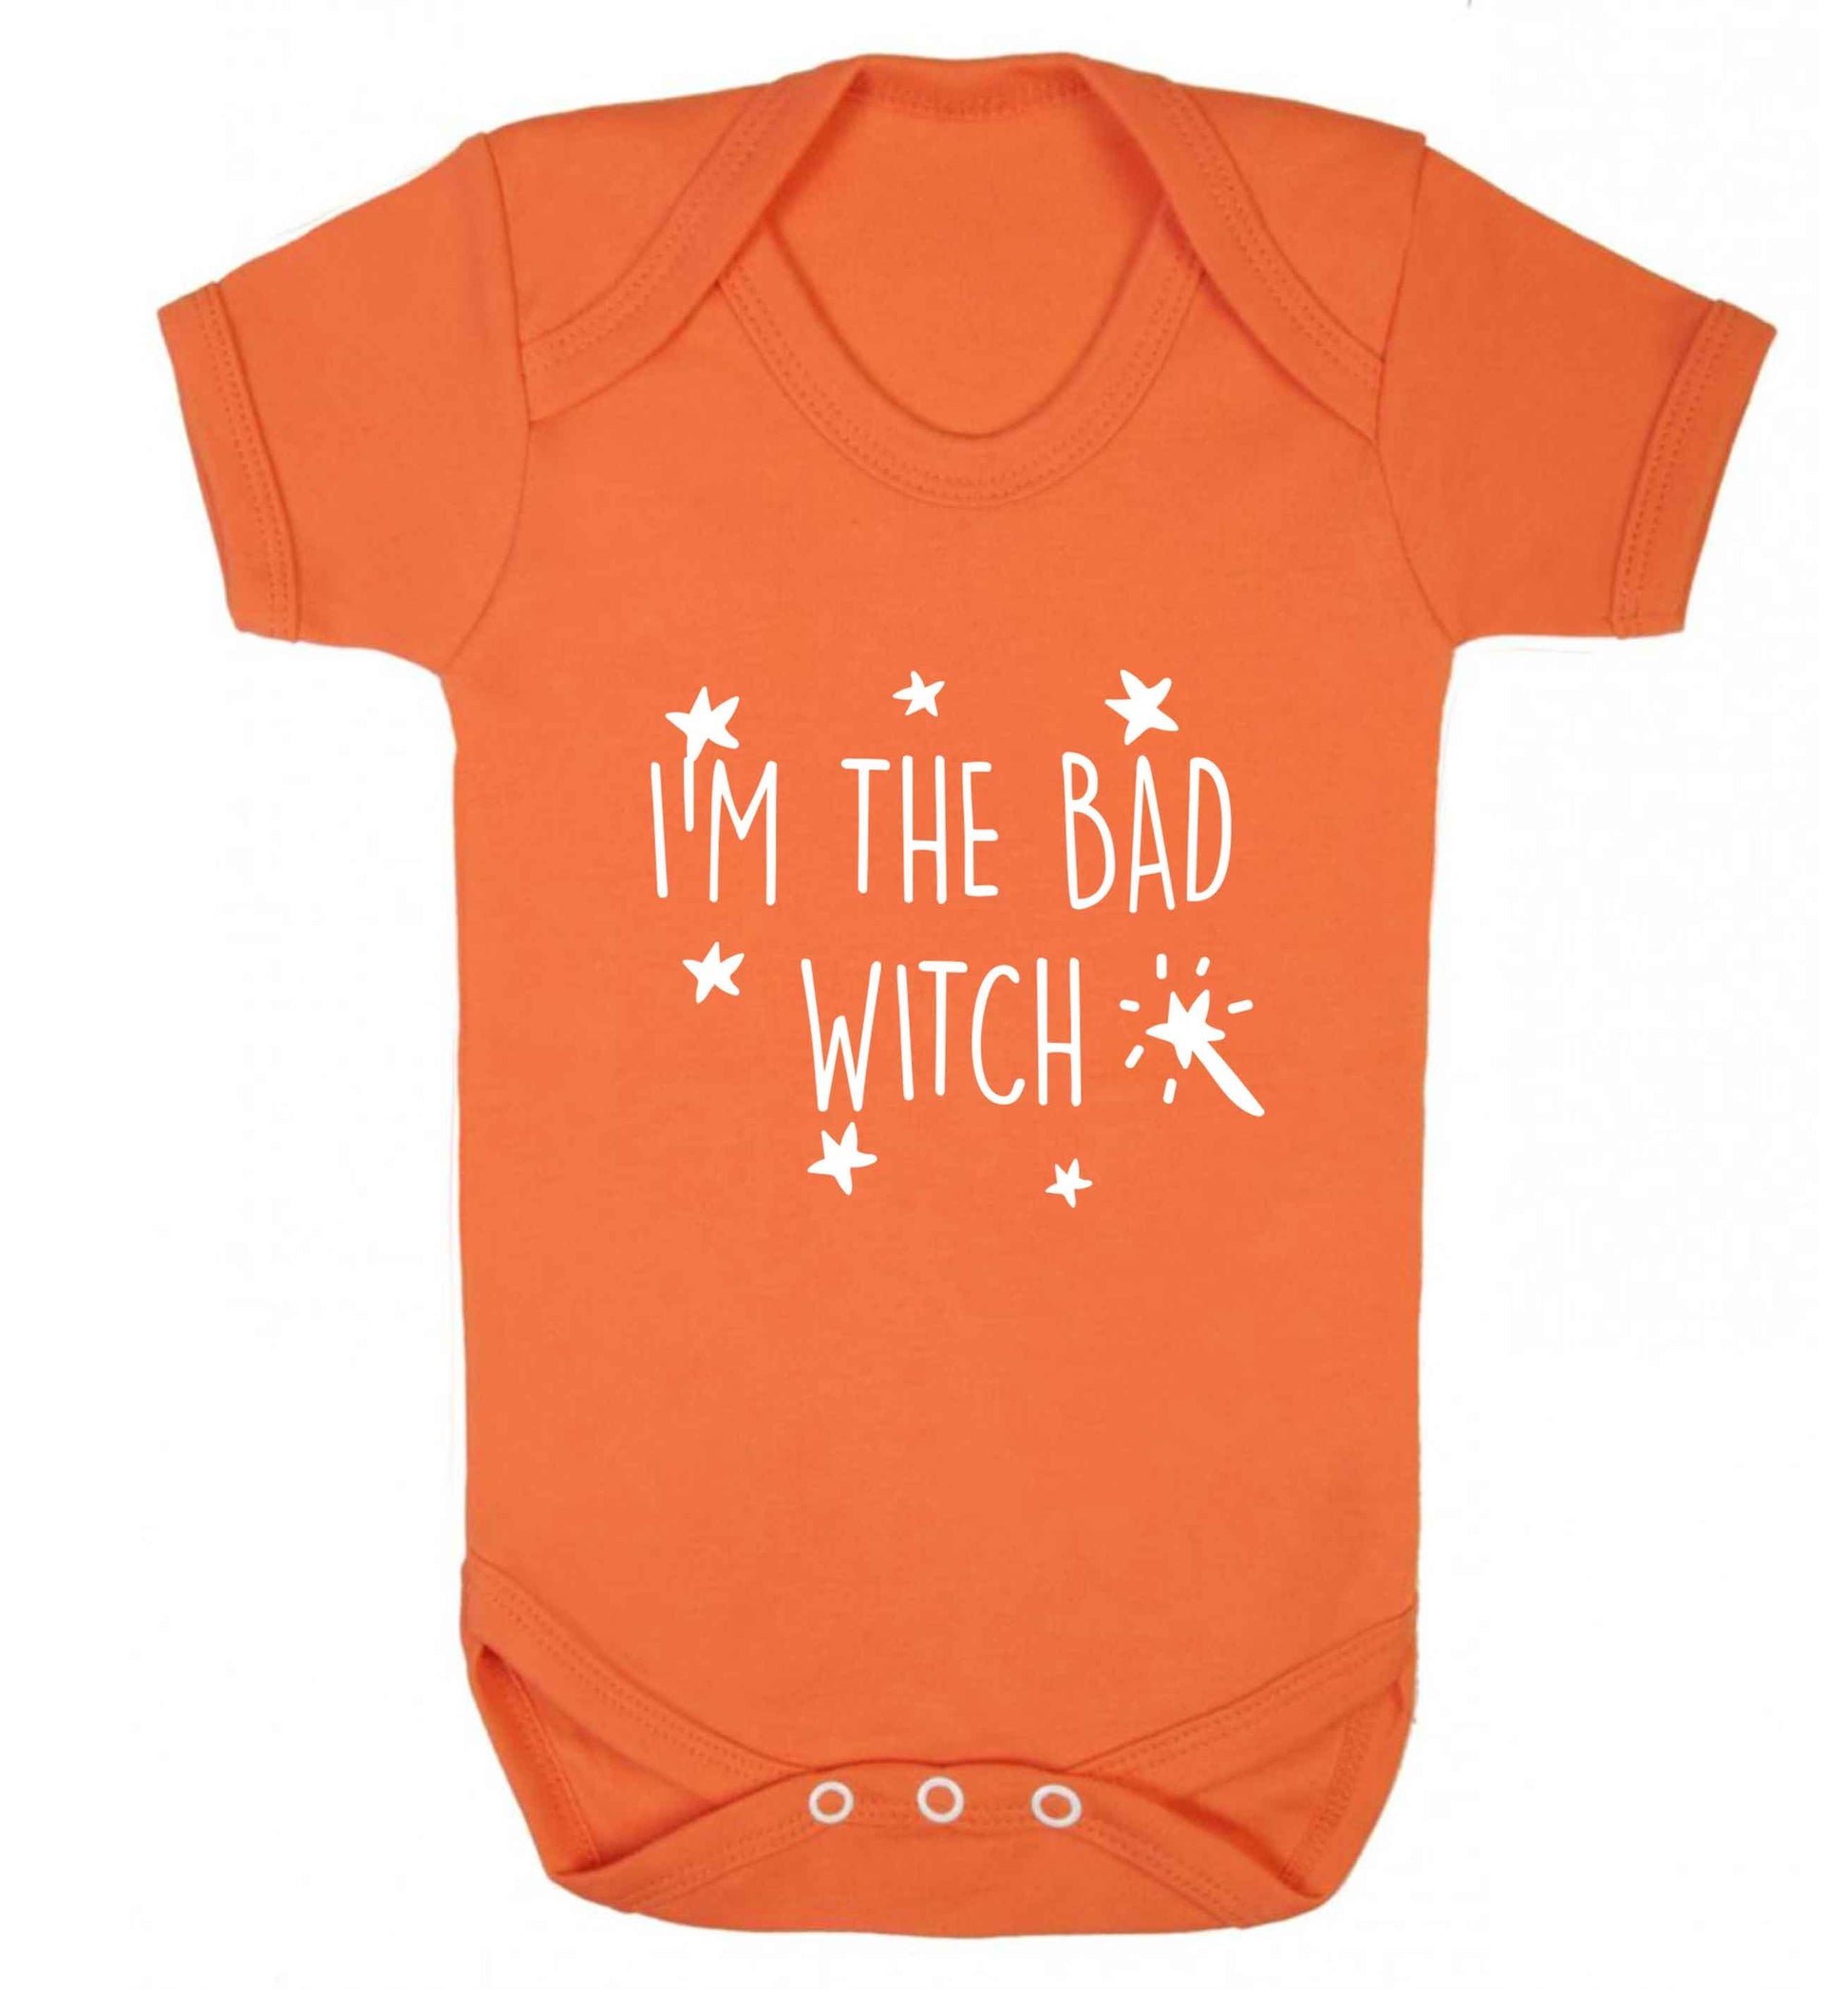 Bad witch baby vest orange 18-24 months